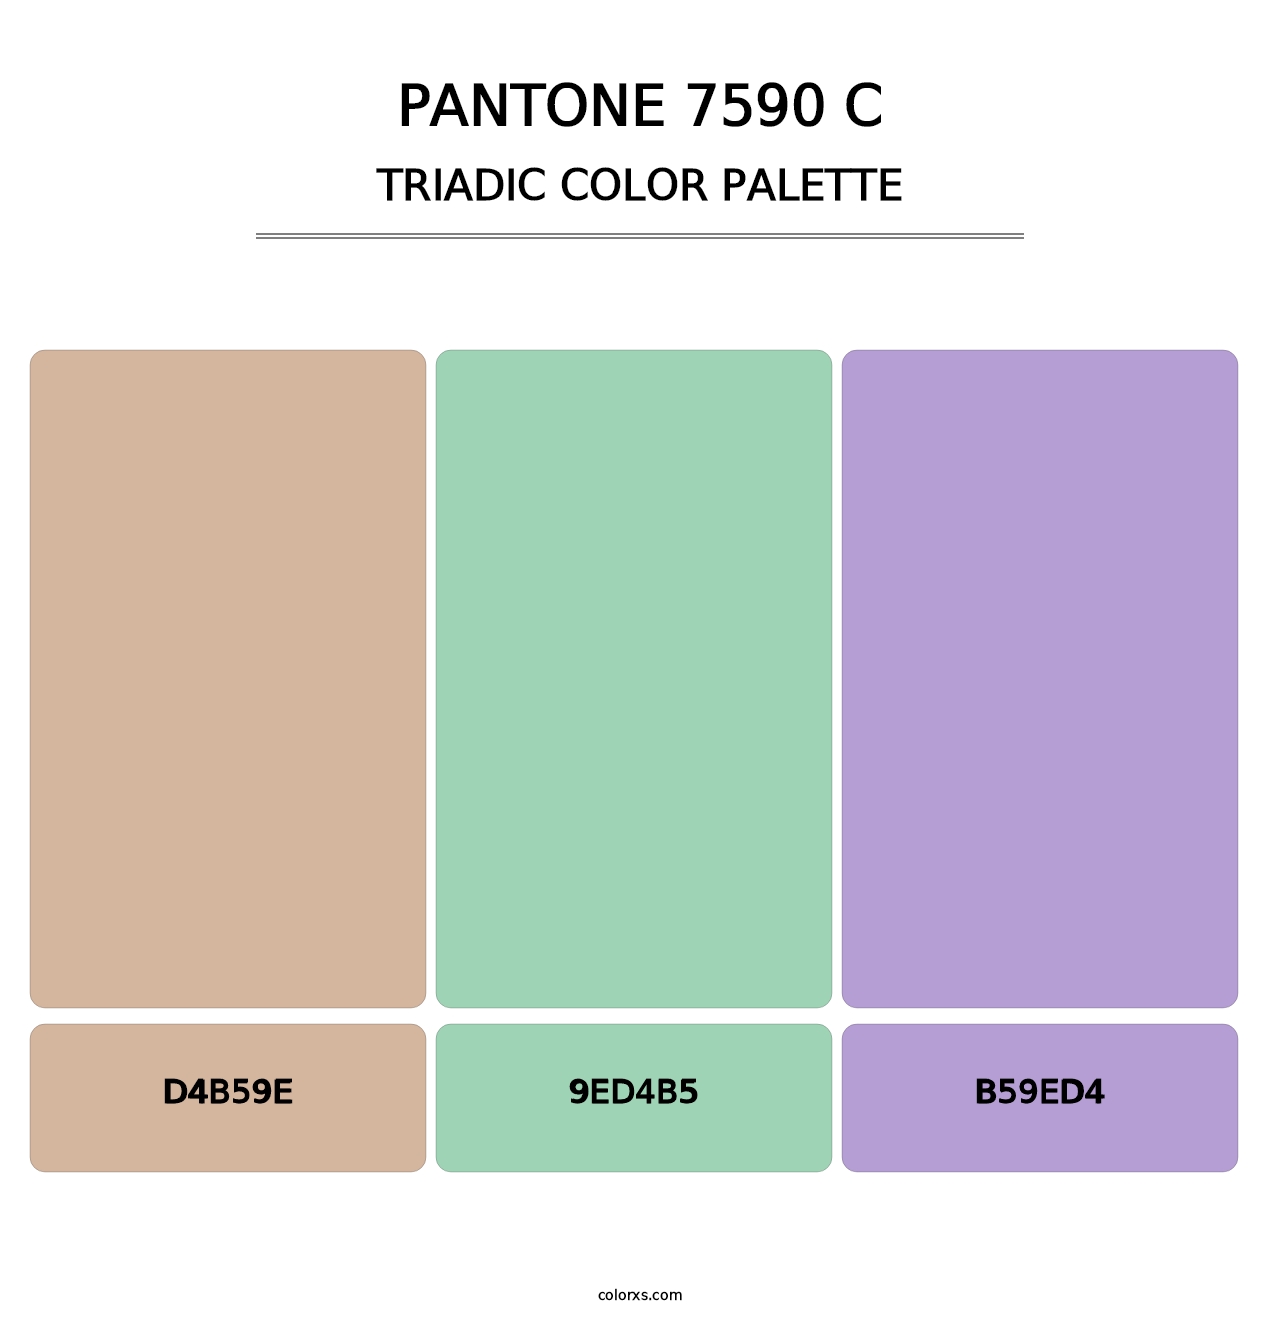 PANTONE 7590 C - Triadic Color Palette